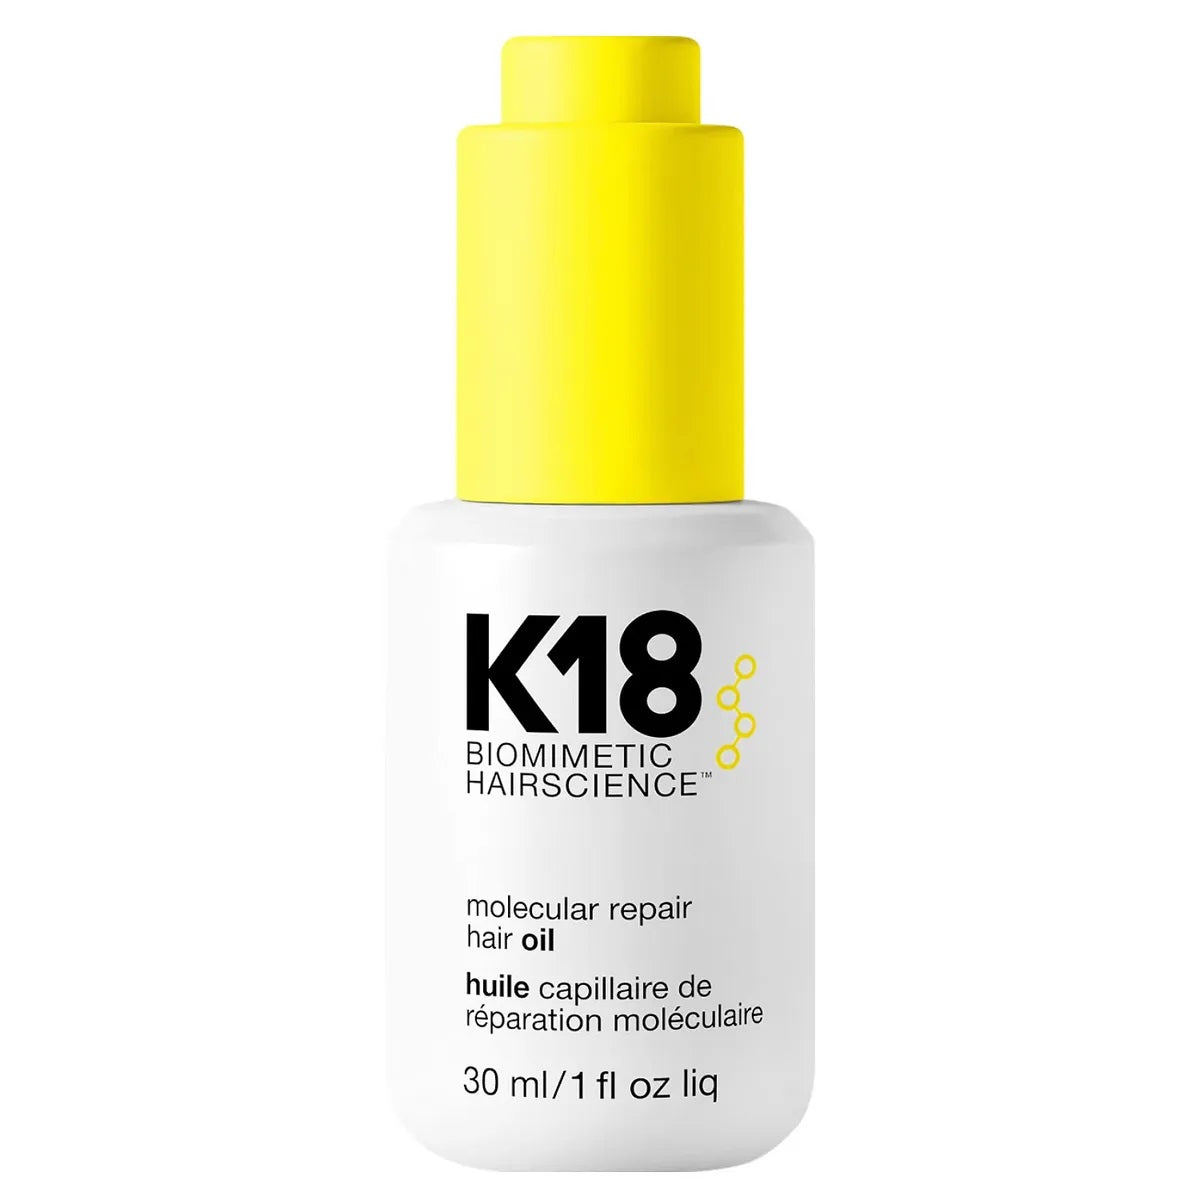 K18 Biomimetic Hairscience Professional Molecular Repair Hair Oil 30ml